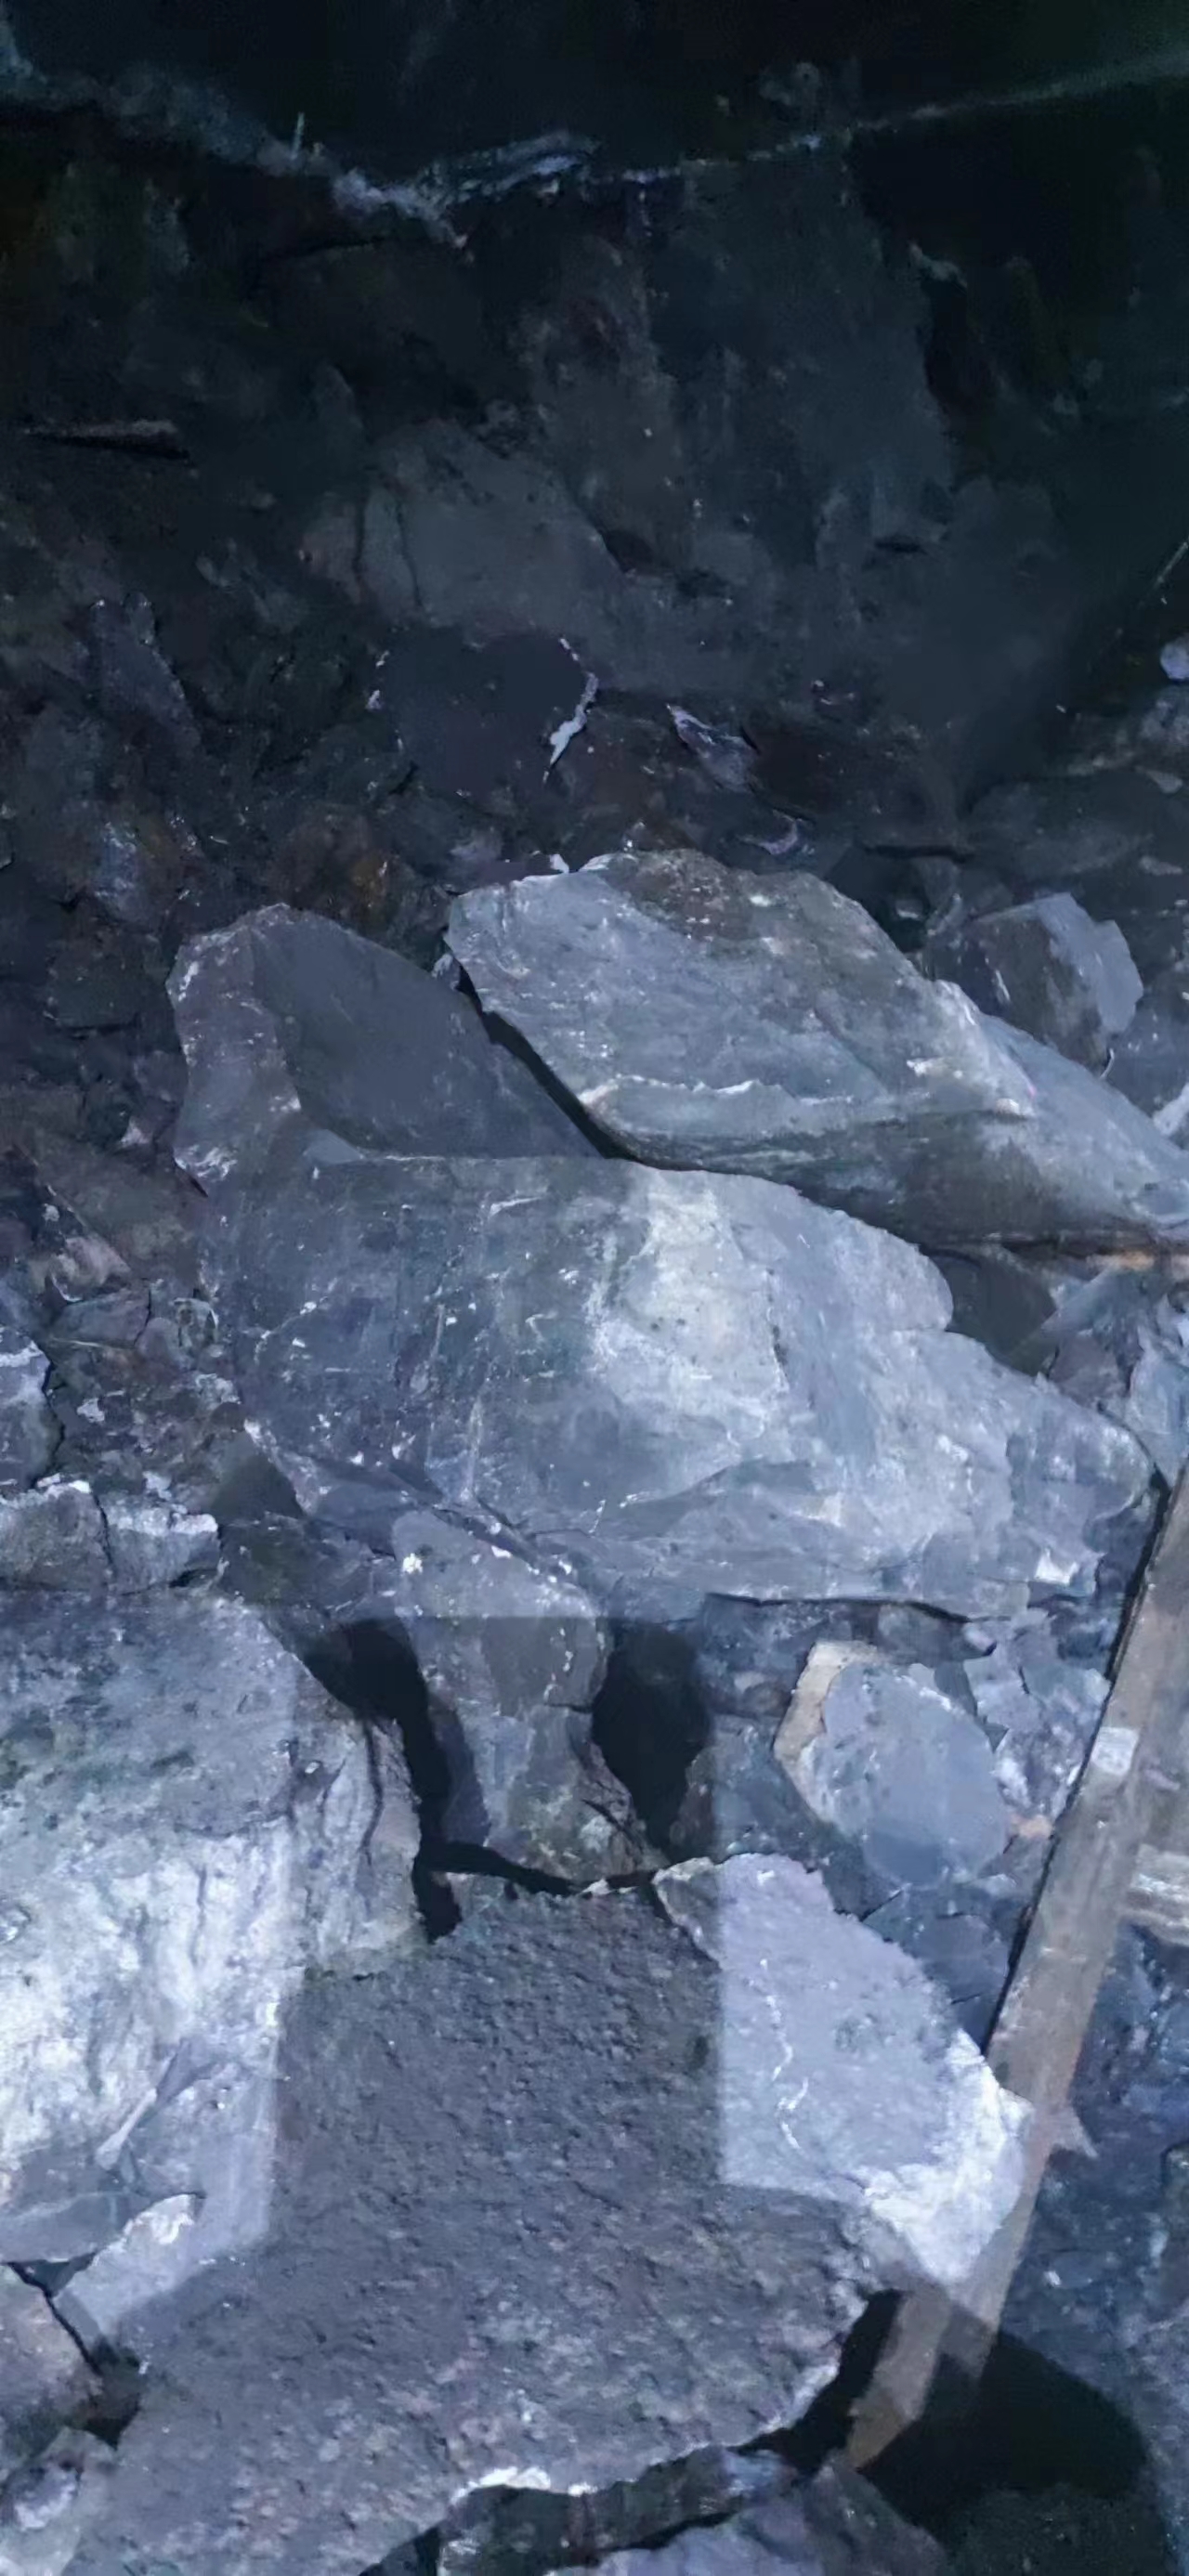 云南丽江二氧化碳爆破欲裂煤矿瓦斯抽采